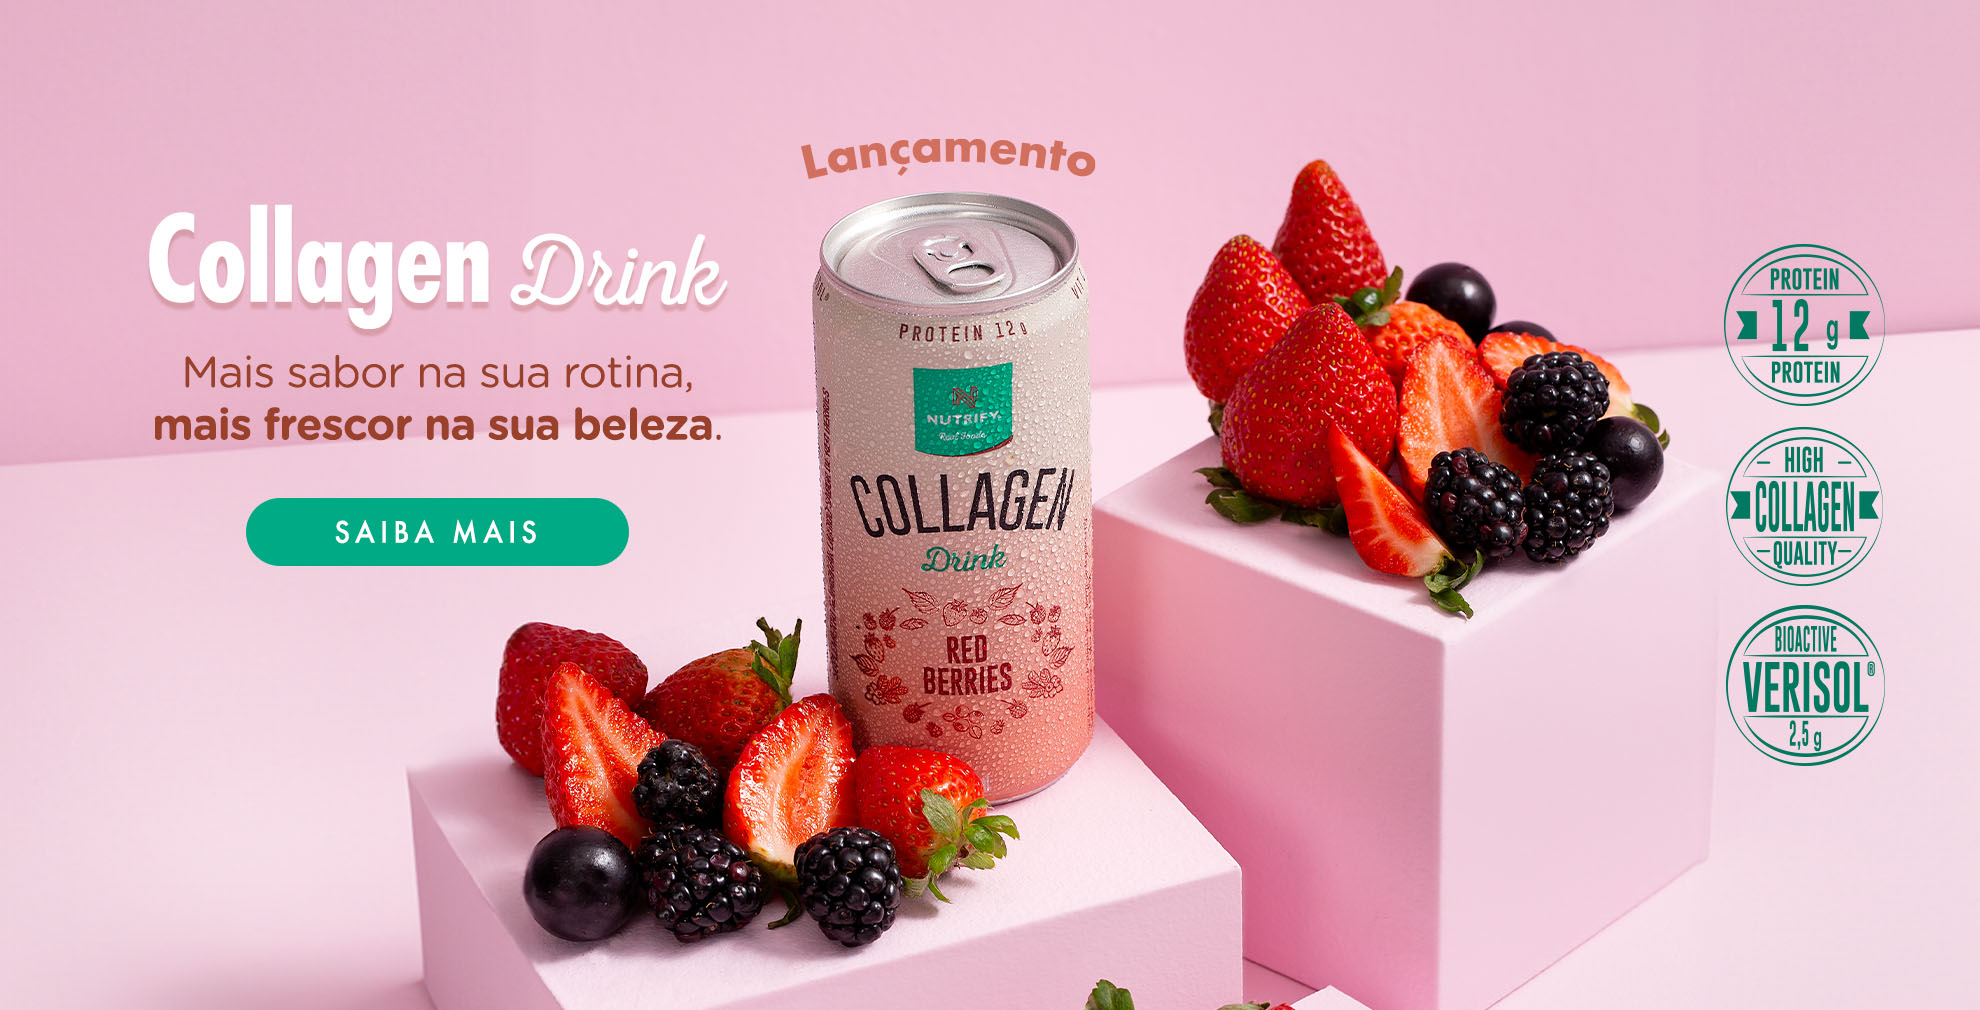 Collagen drink - Novo sabor 2